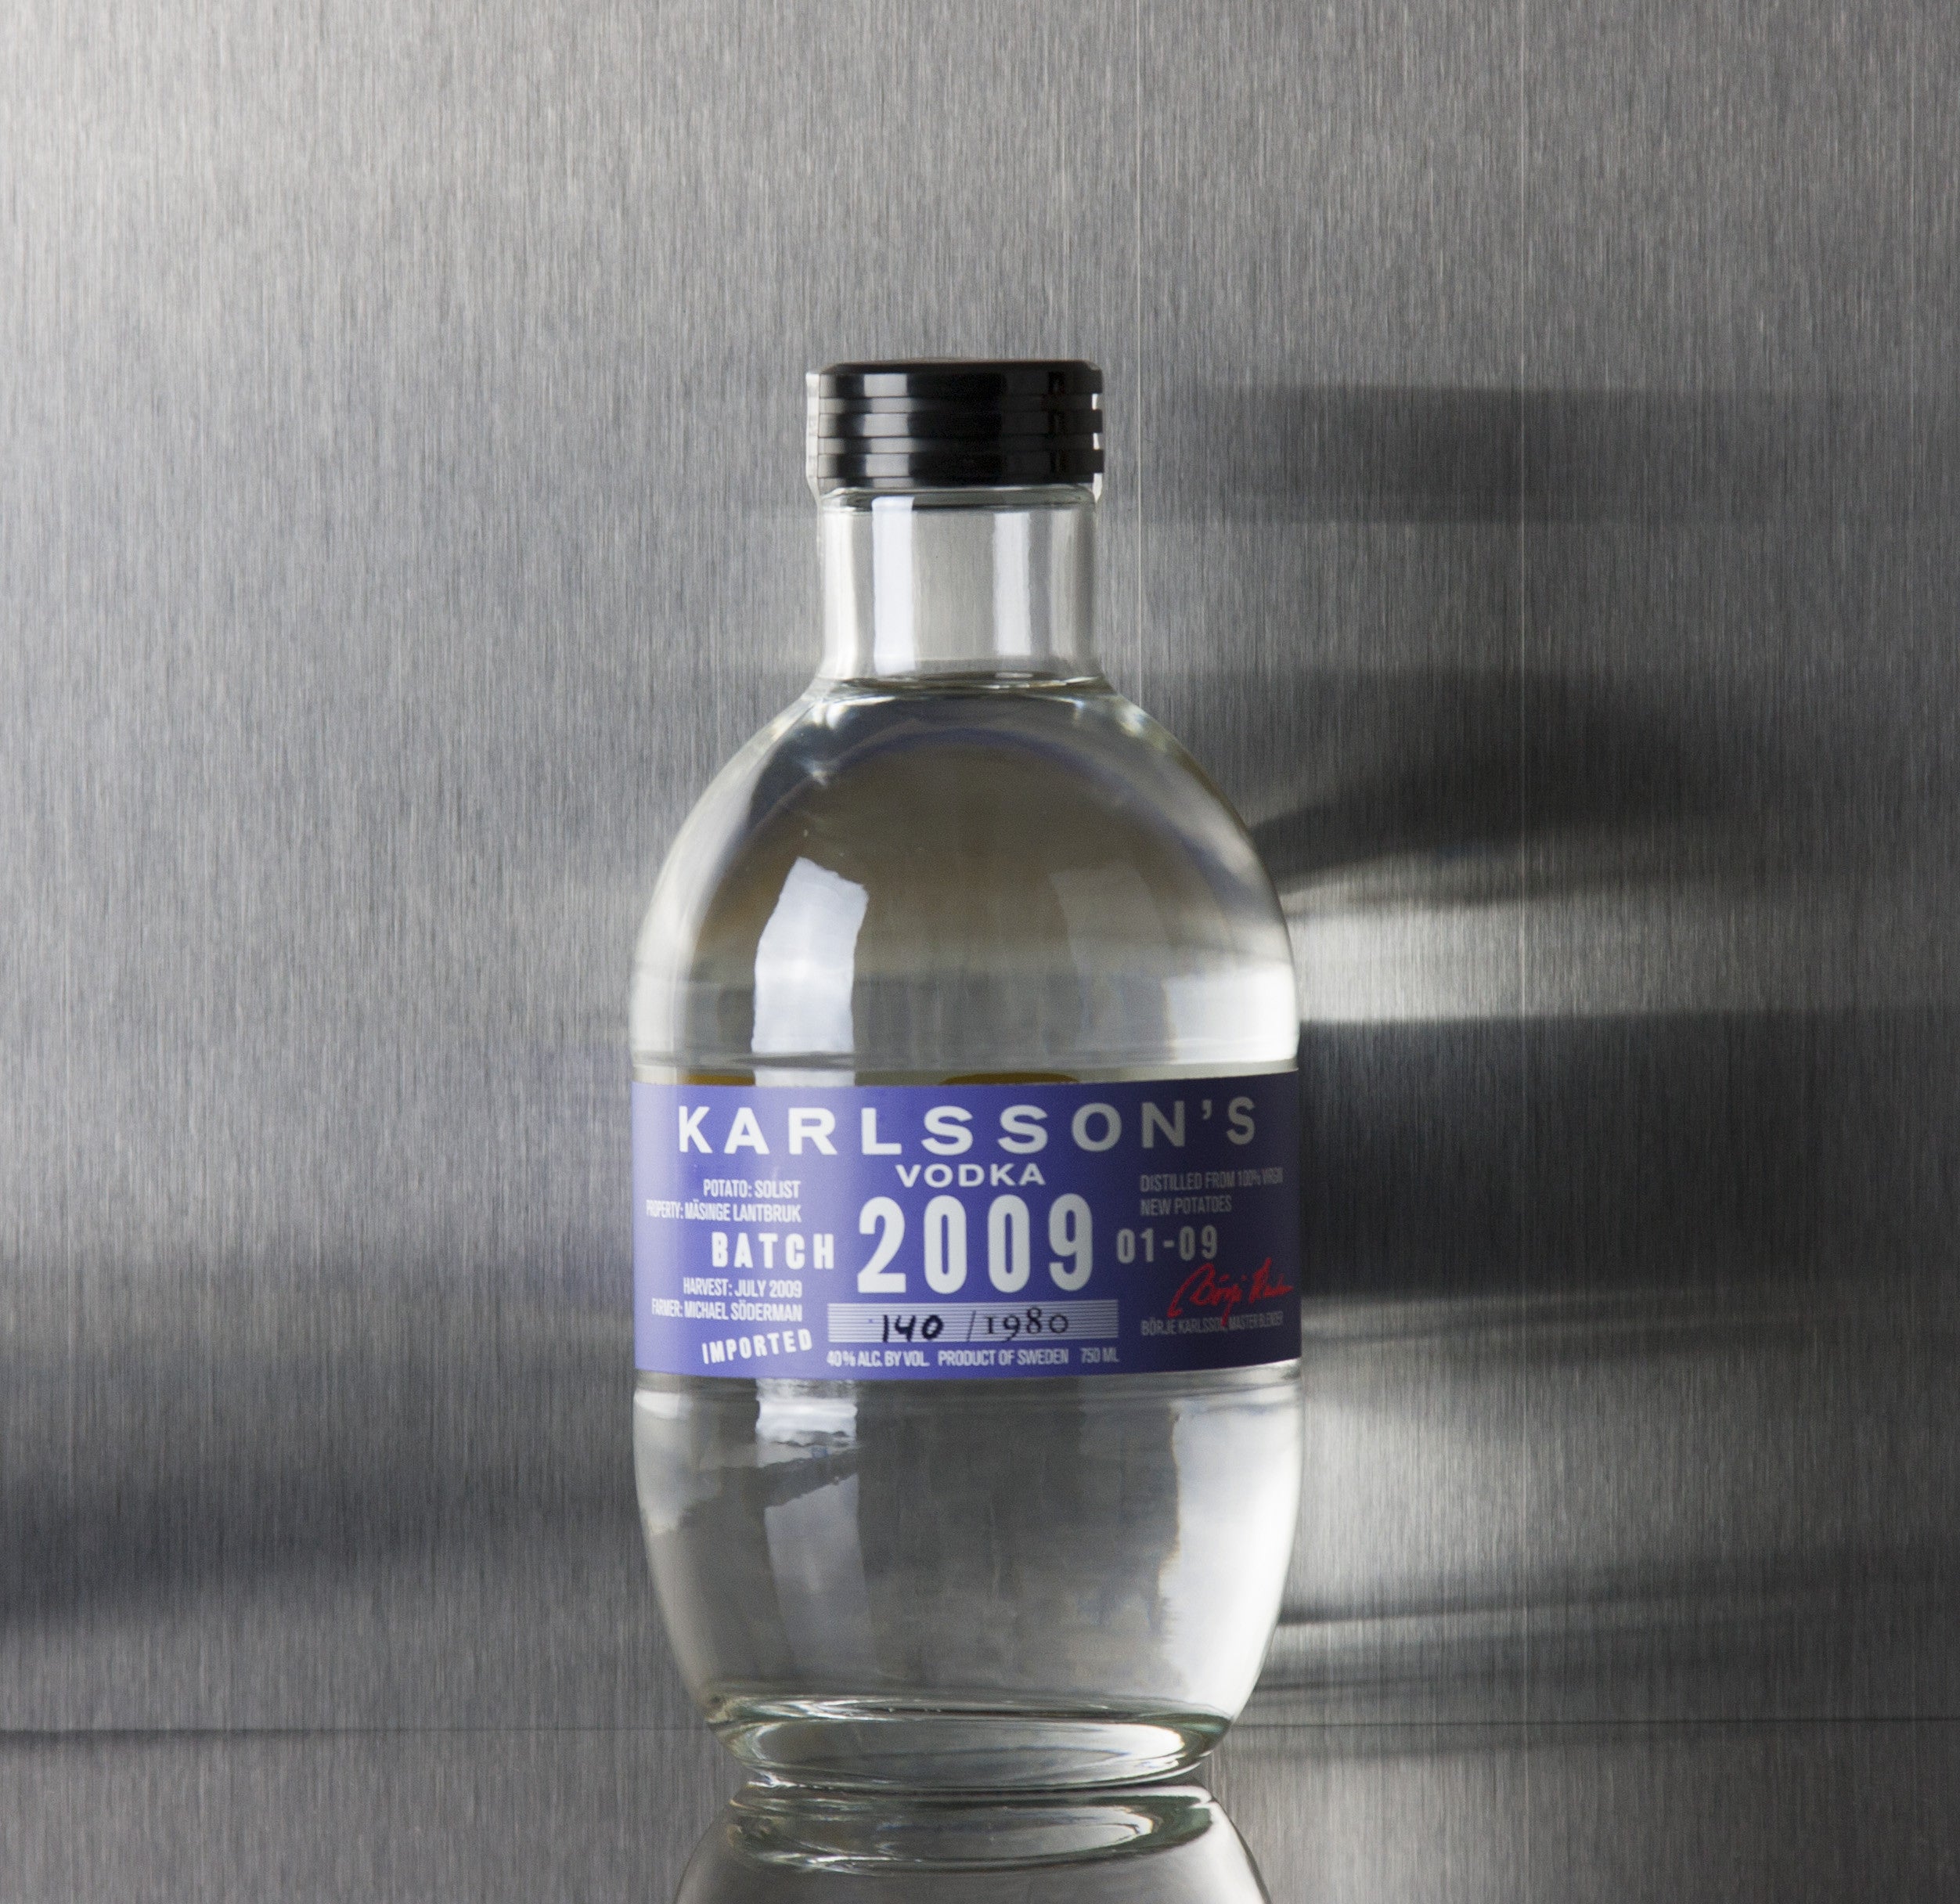 Karlsson's Vodka 2009 Batch 01-09 750 ml